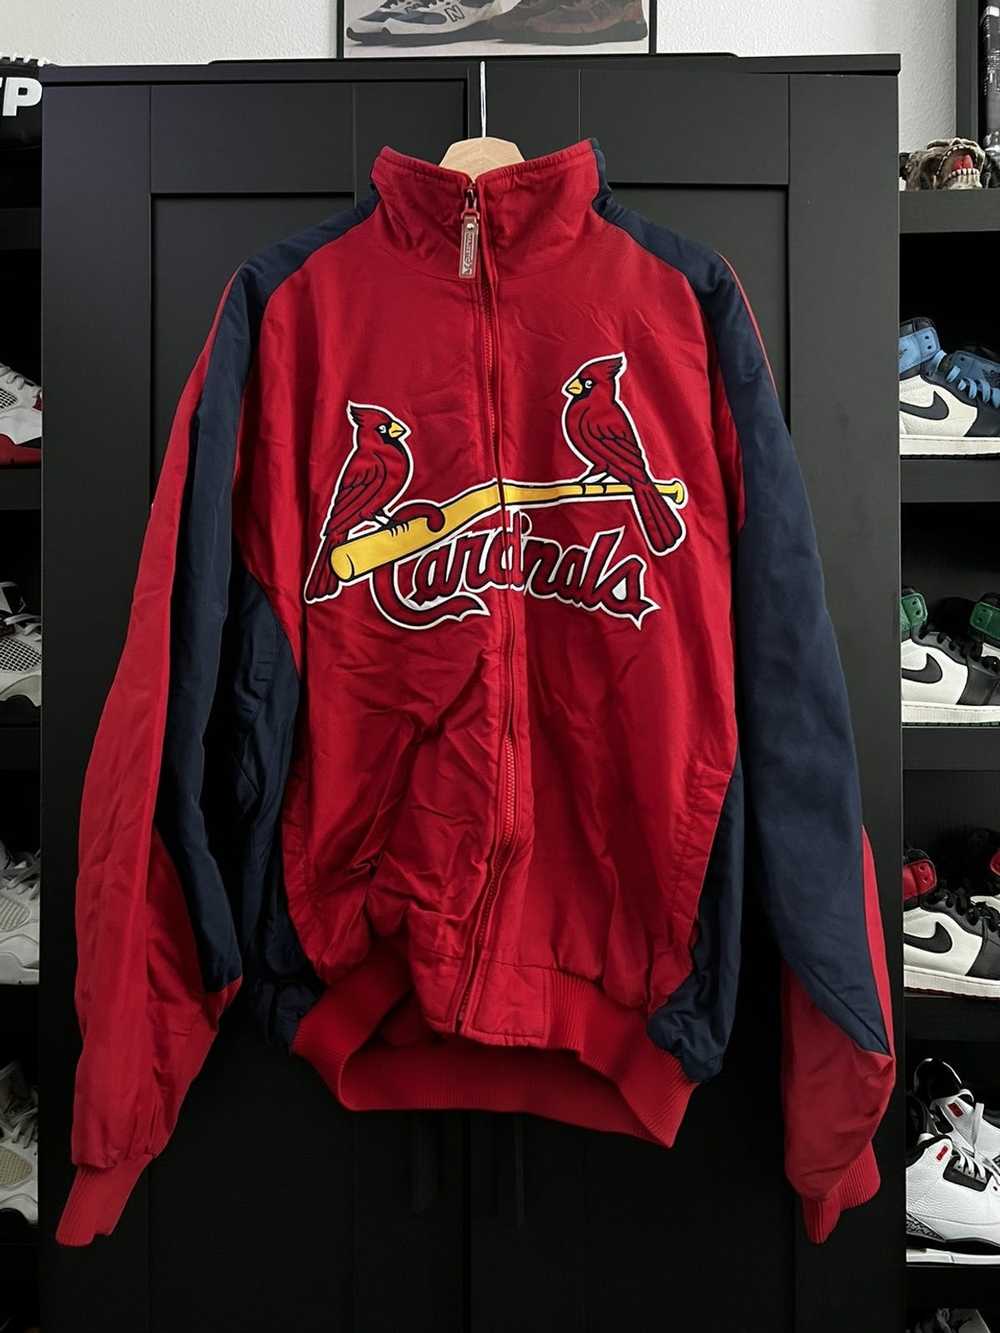 St. Louis Cardinals Custom Number And Name AOP MLB Hoodie Long Sleeve Zip  Hoodie Gift For Fans - Banantees